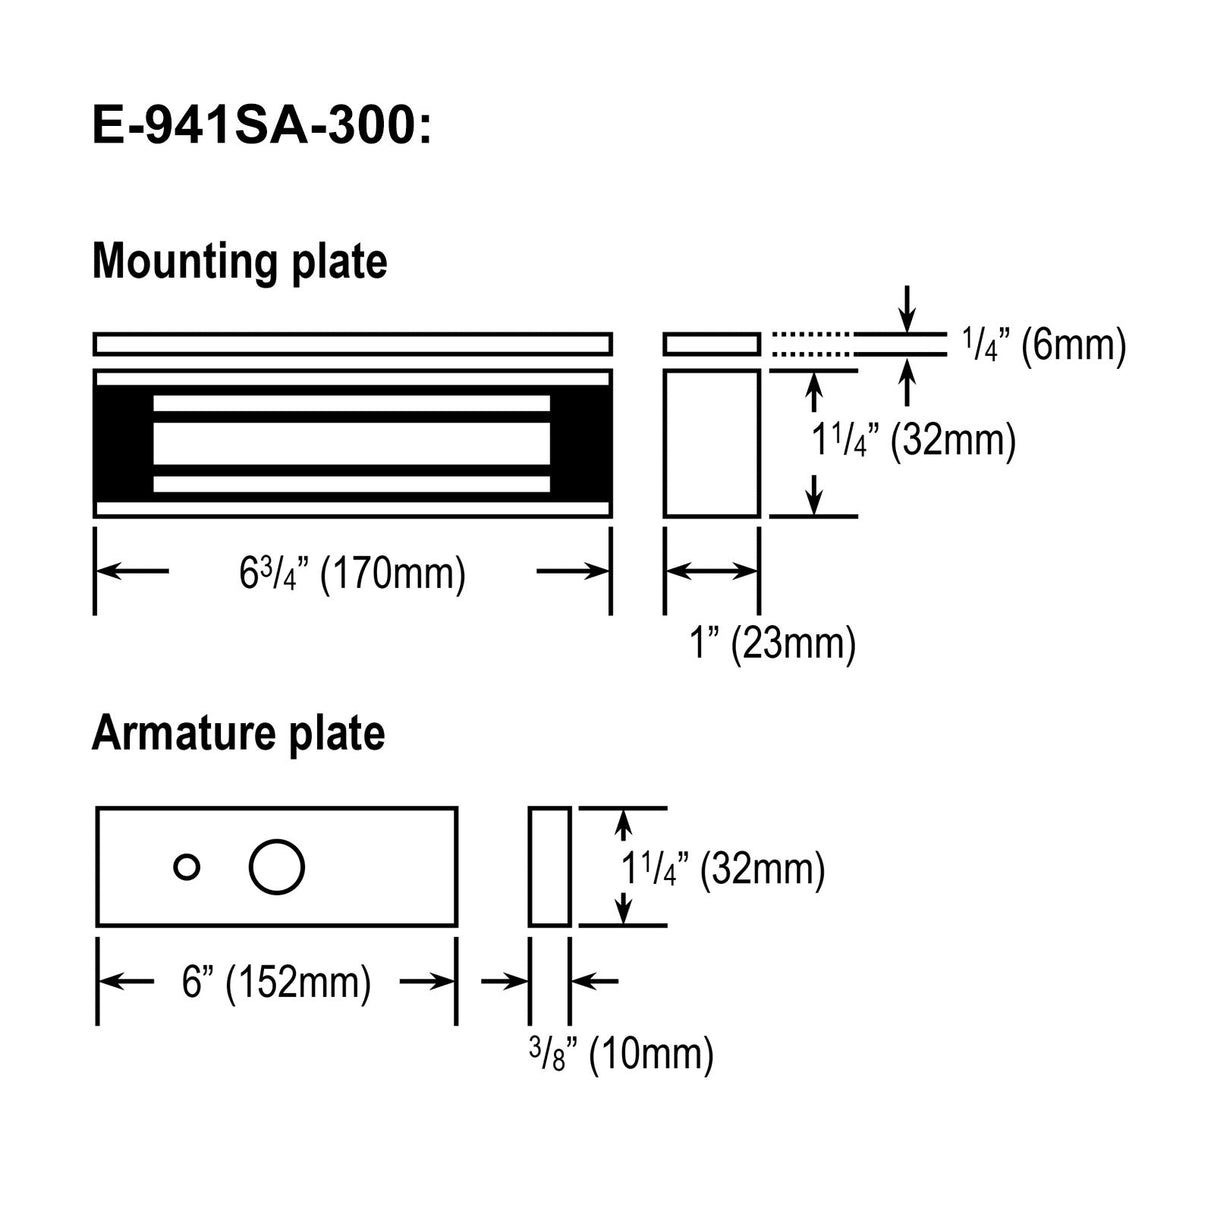 Seco-Larm E-941SA-300 dimensions